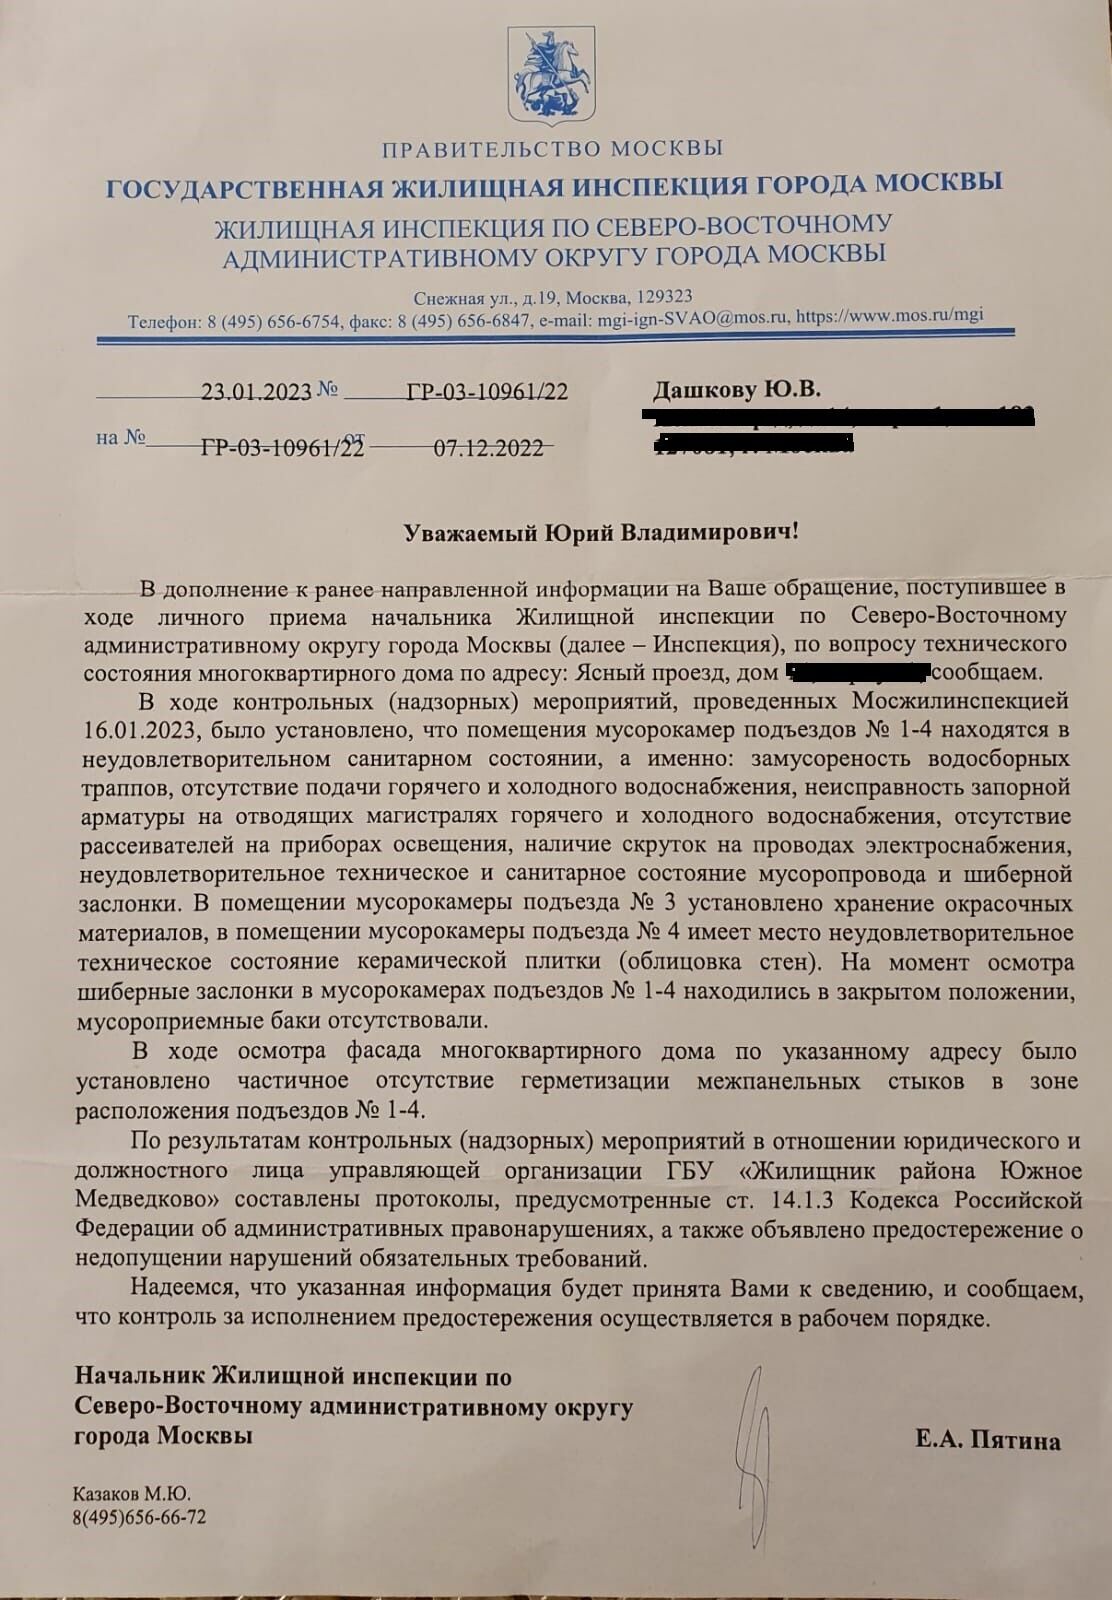 Почти все жалобы Юрия Дашкова на некачественные услуги ГБУ "Жилищник" подтвердились в ходе инспекций